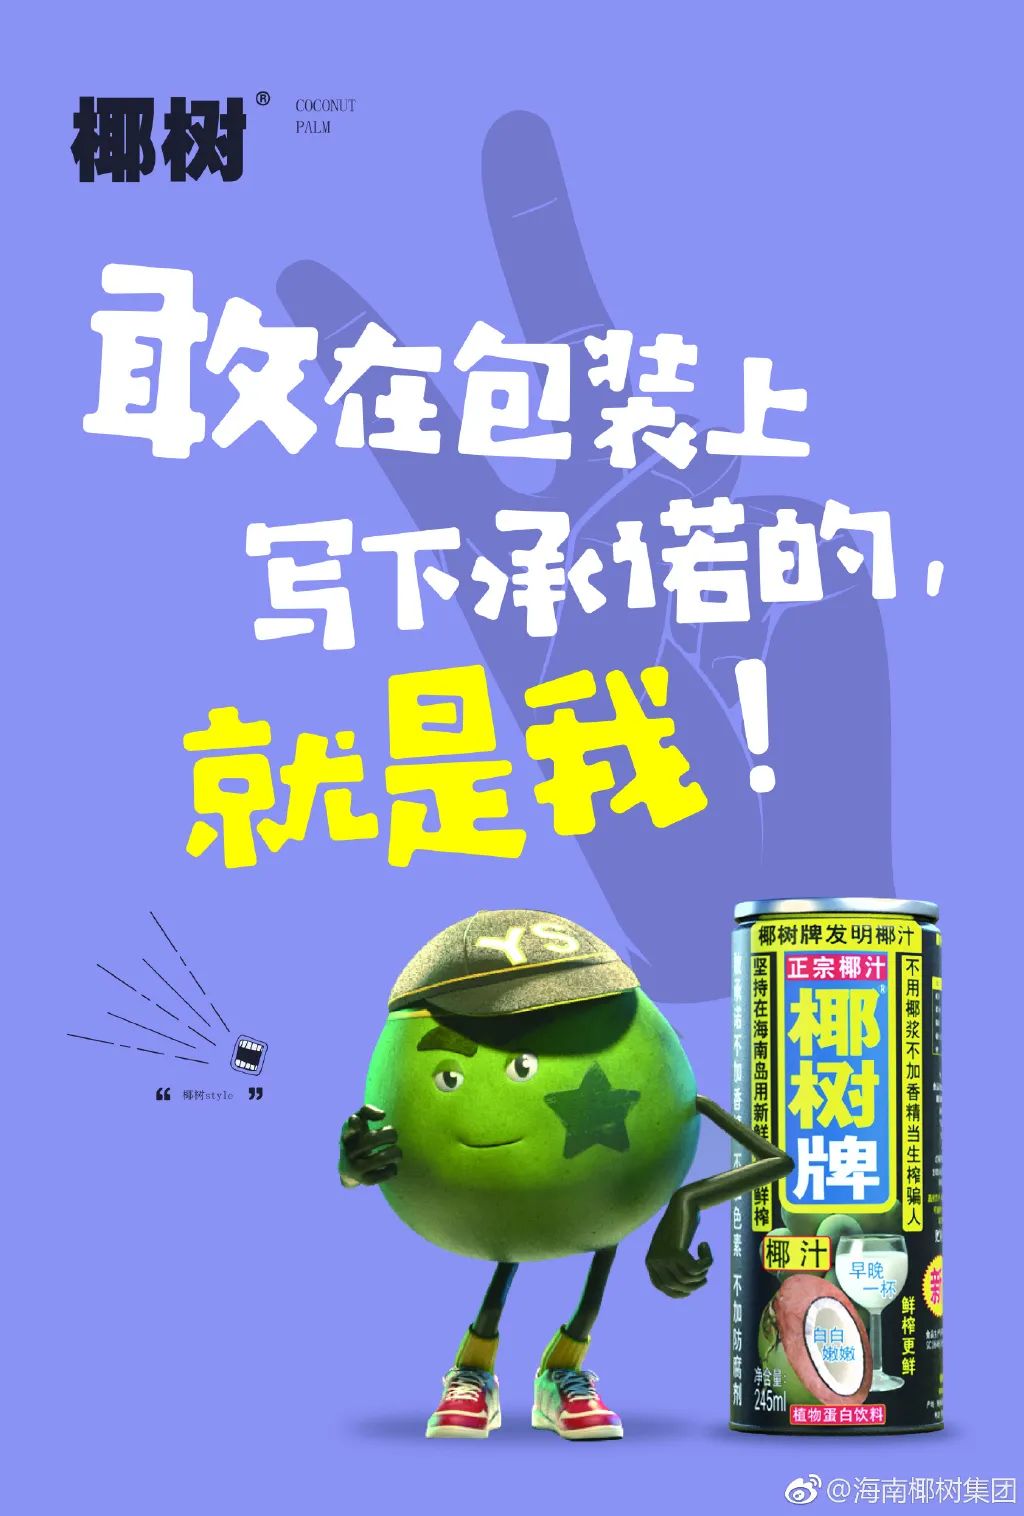 椰树椰汁logo和包装设计的背后-传播蛙